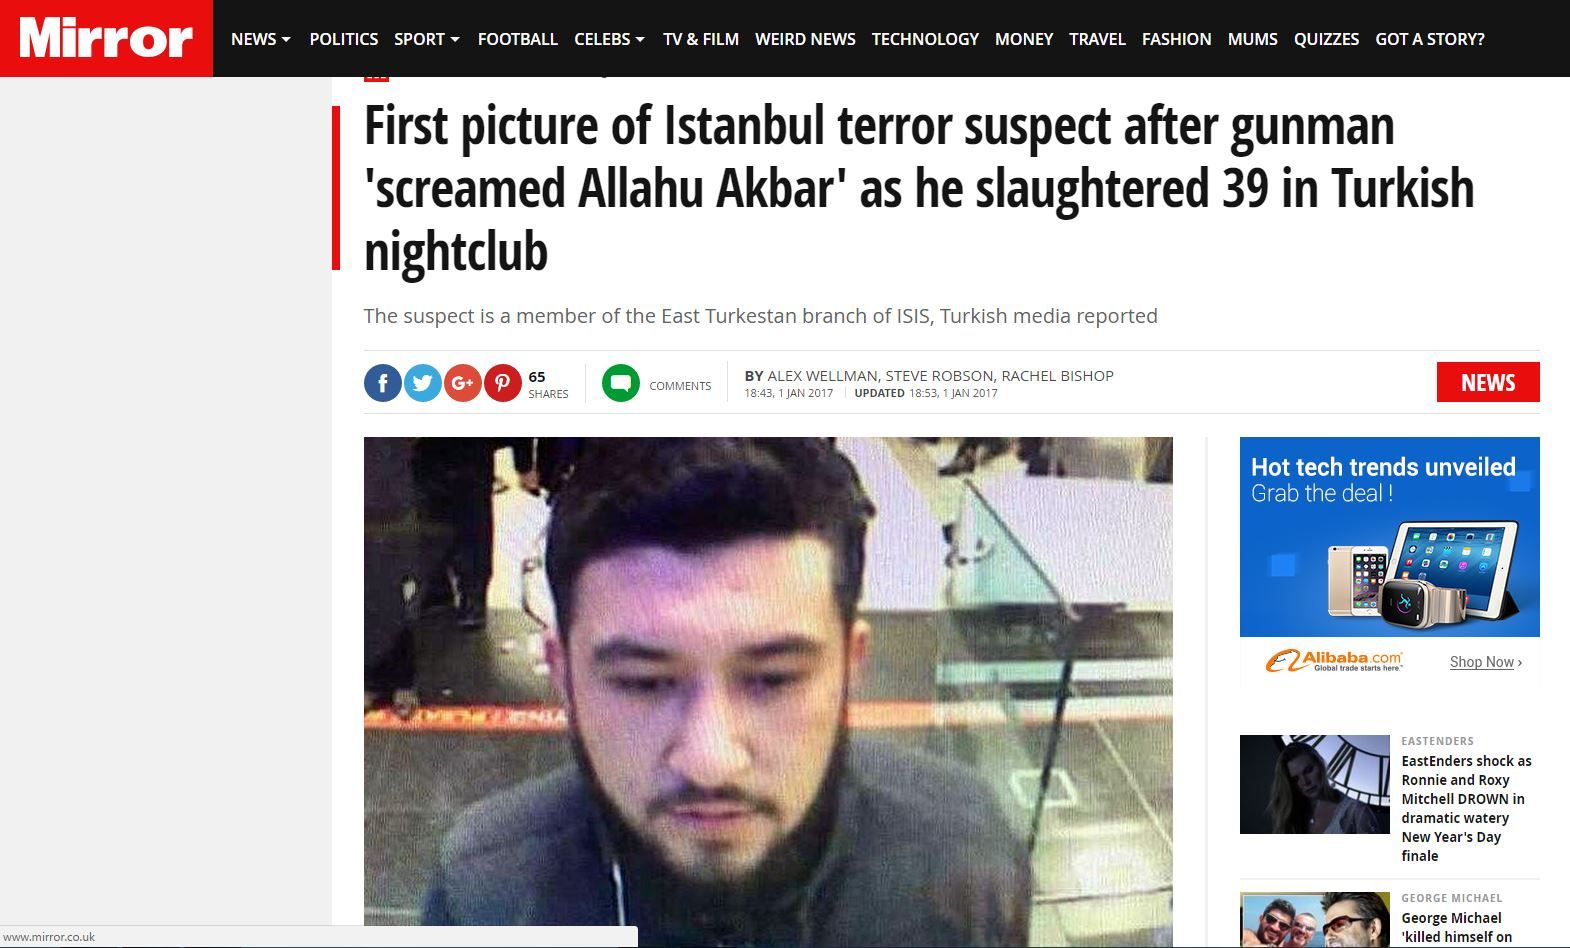 Mirror: Μέλος του ISIS ο μακελάρης της Κωνσταντινούπολης